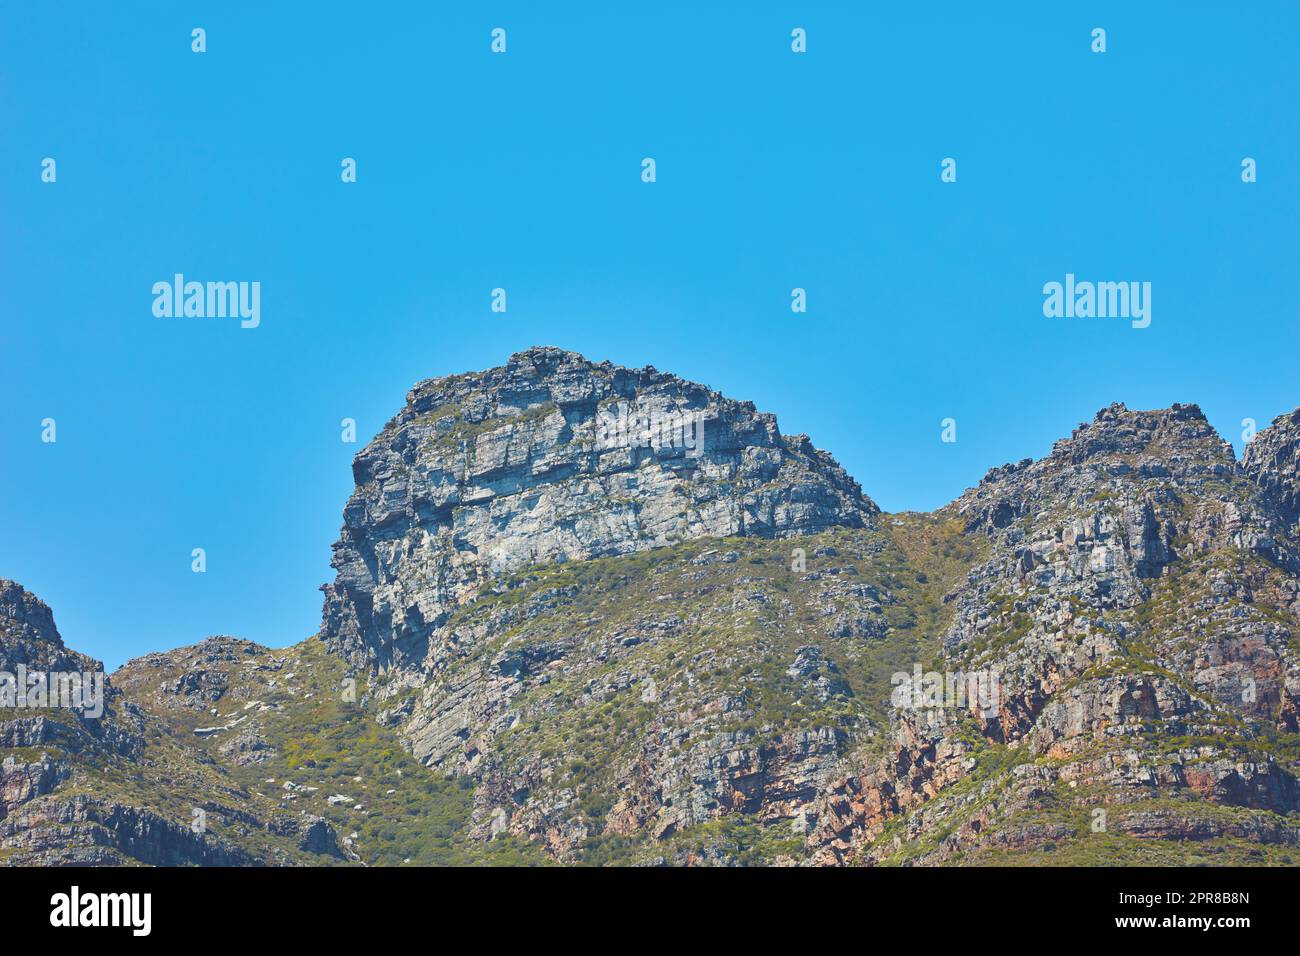 Paysage pittoresque des douze Apôtres montagne sous ciel bleu clair copie espace au Cap, Afrique du Sud. Destination touristique et touristique célèbre avec terrain de randonnée escarpé et arbres et arbustes en pleine croissance Banque D'Images